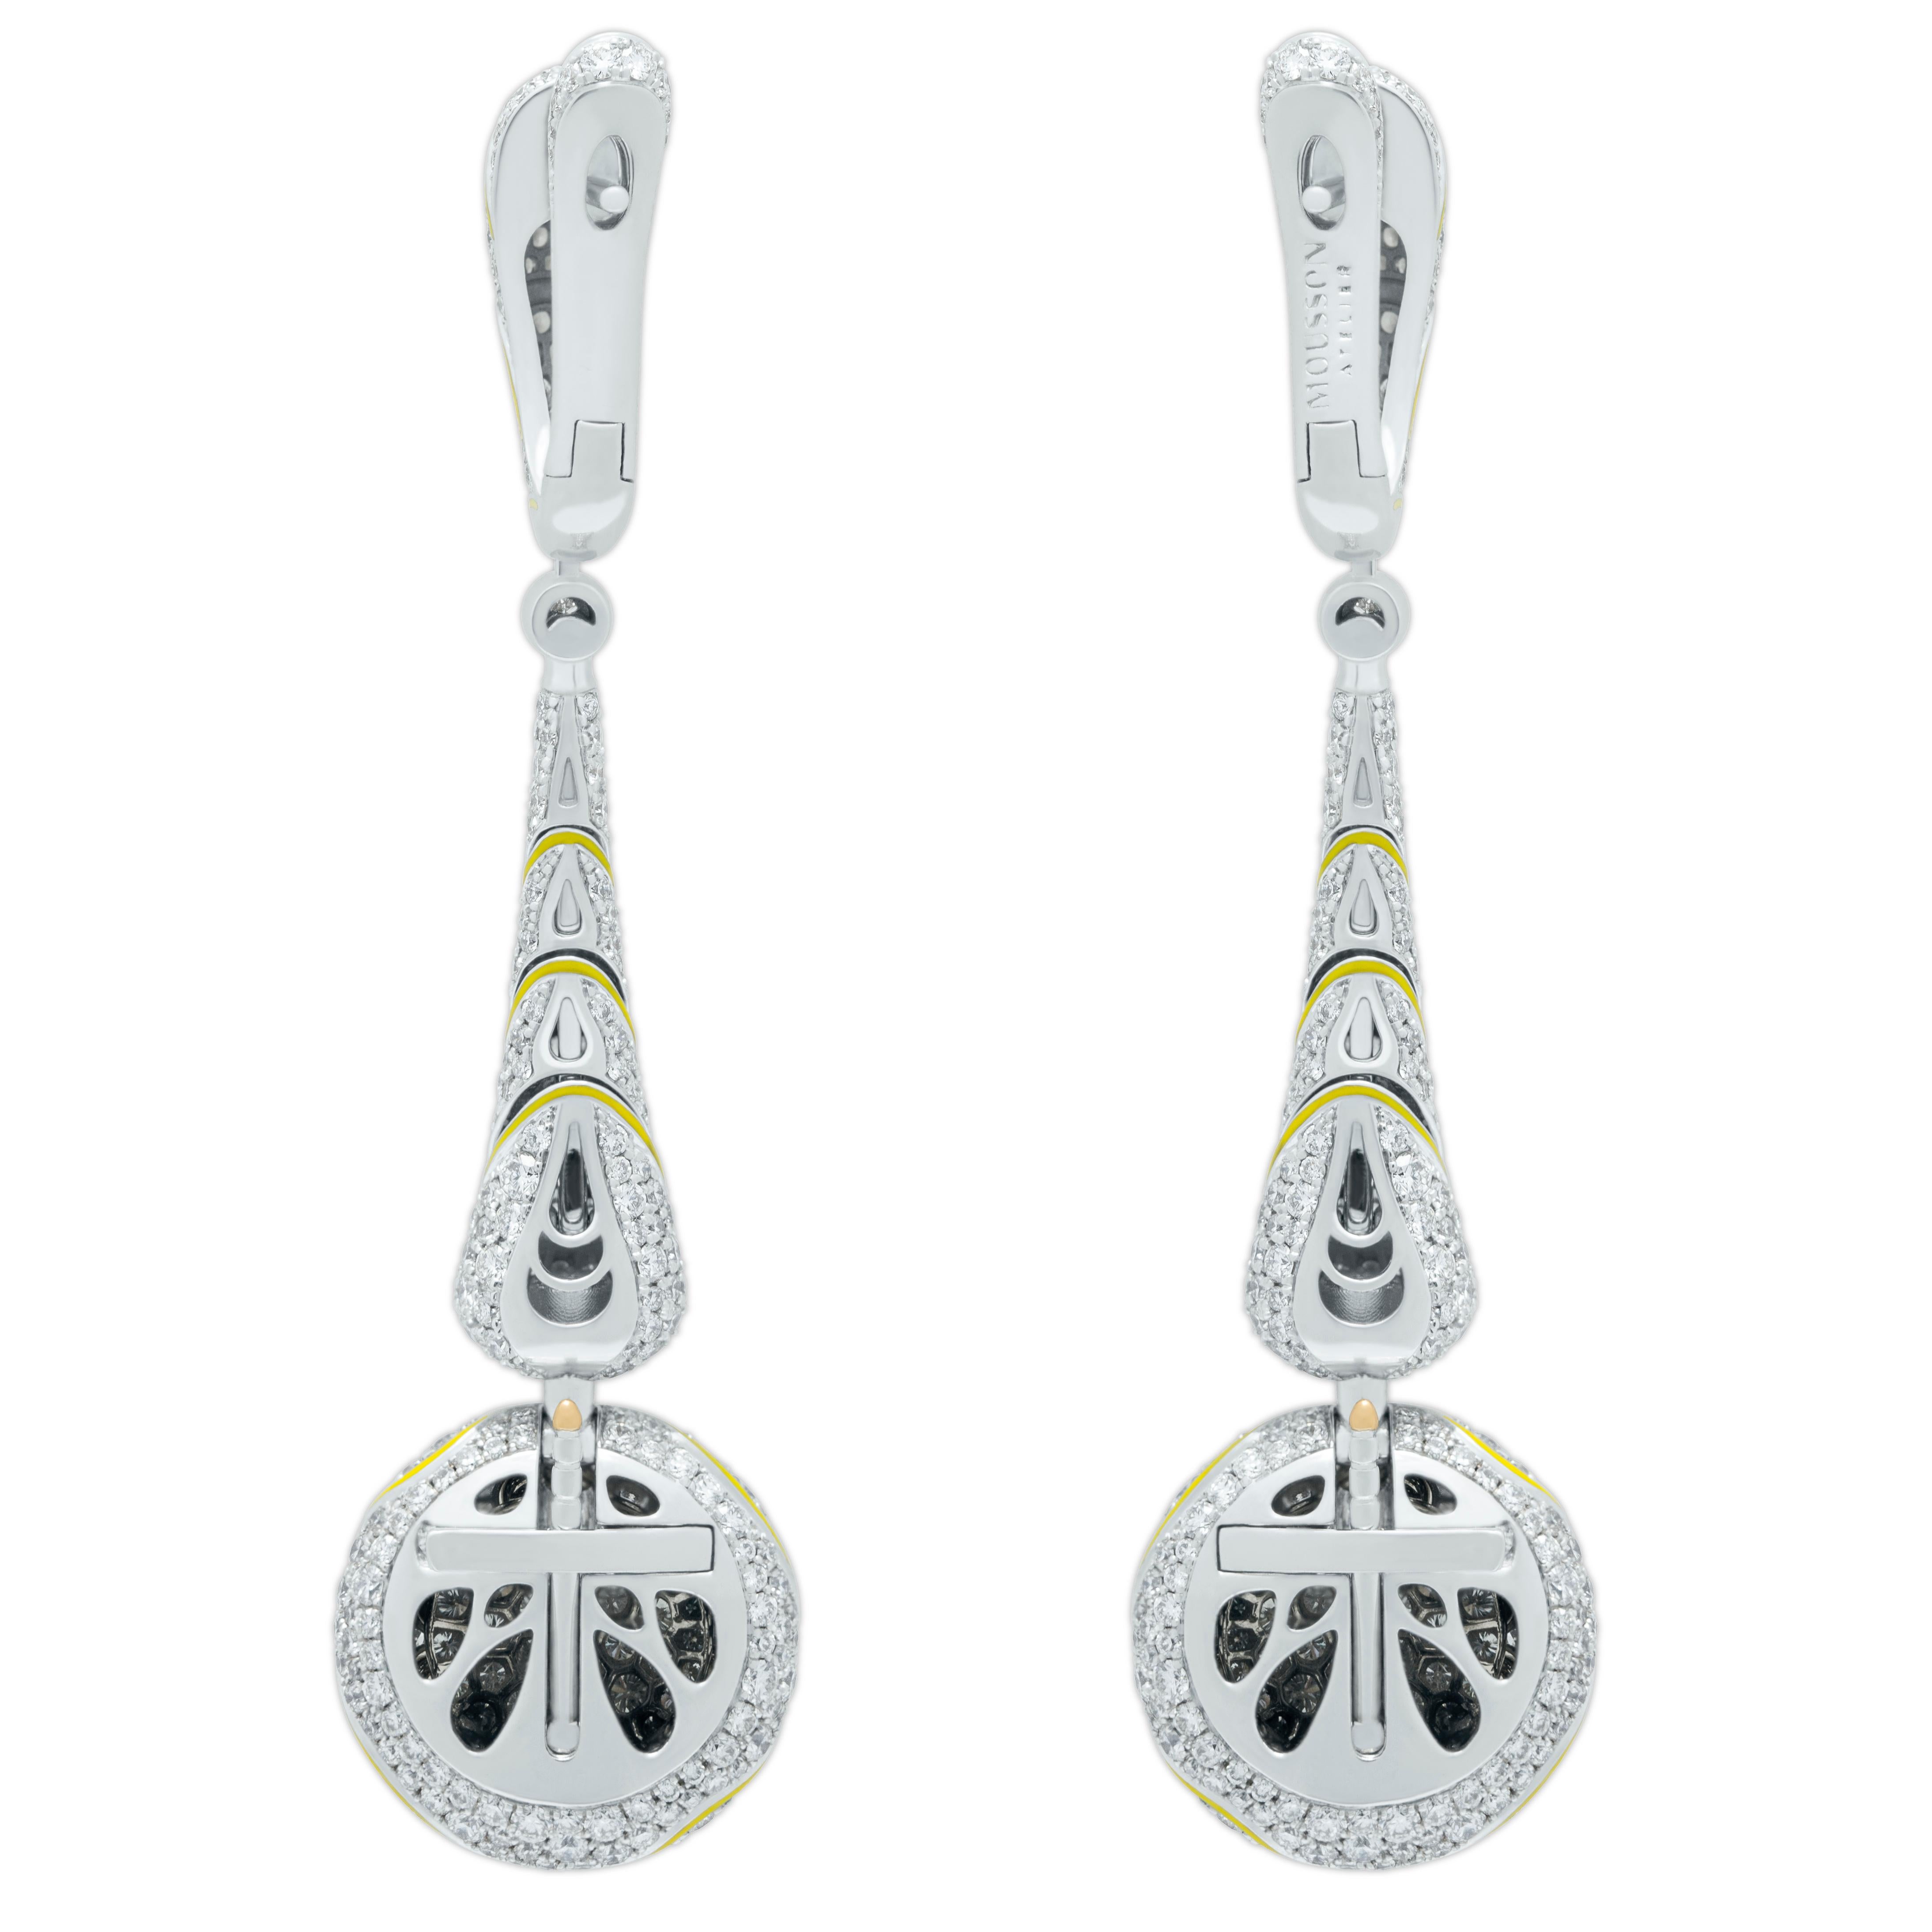 Gelbe Diamanten Weiße Diamanten Emaille 18 Karat Weiß- und Gelbgold High Jewelry Ohrringe

Erleben Sie luxuriöse Handwerkskunst mit diesen Ohrringen aus 18 Karat Weißgold. Mit 12 einzigartigen gelben Diamanten in Birnen- und Ovalform mit einem